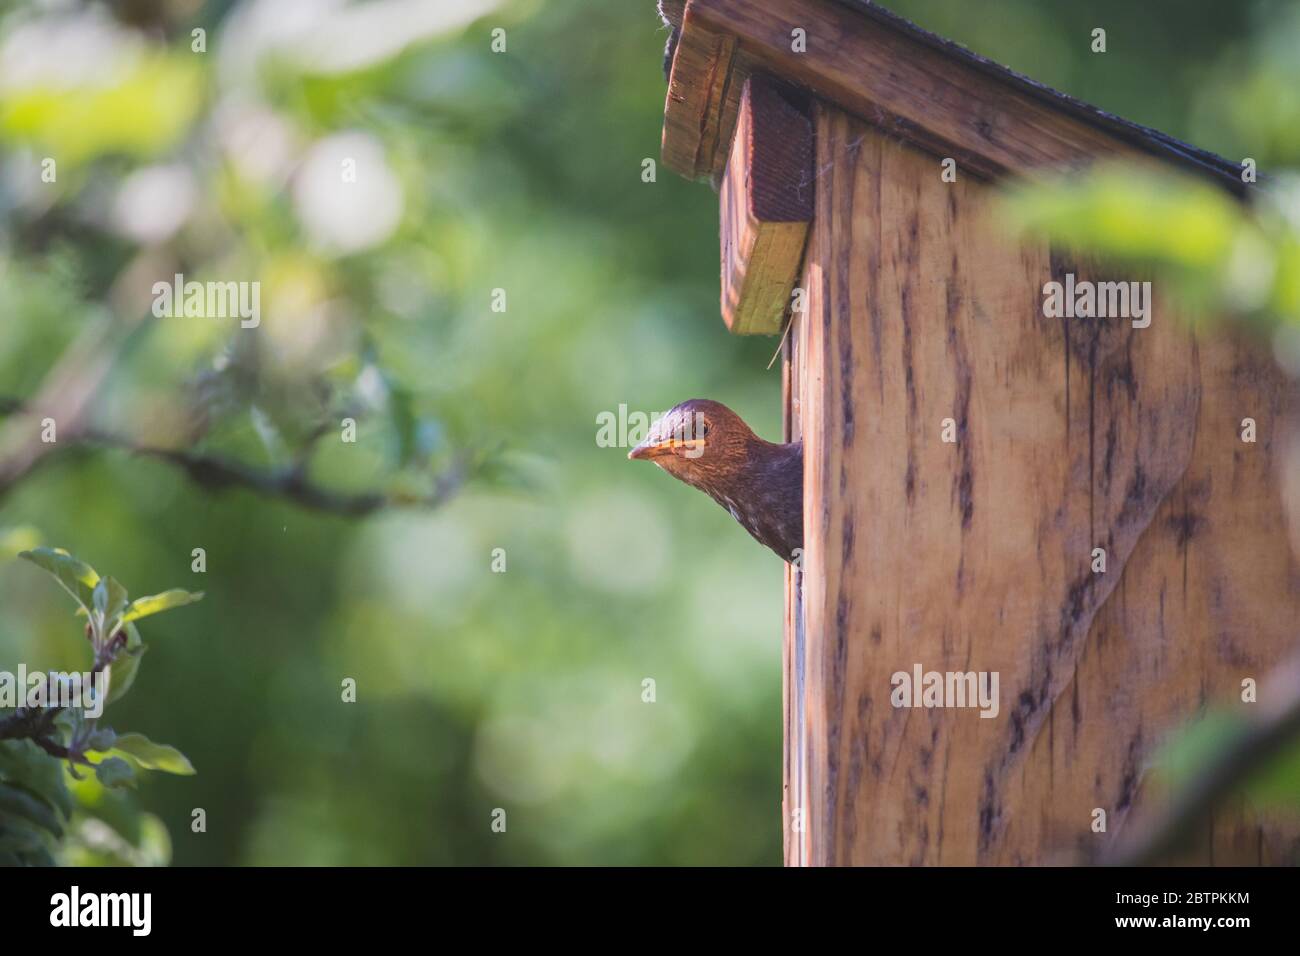 Pájaro pequeño con la cabeza saliendo de una casa de aves, inclinándose y mirando alrededor (Starling común) Foto de stock